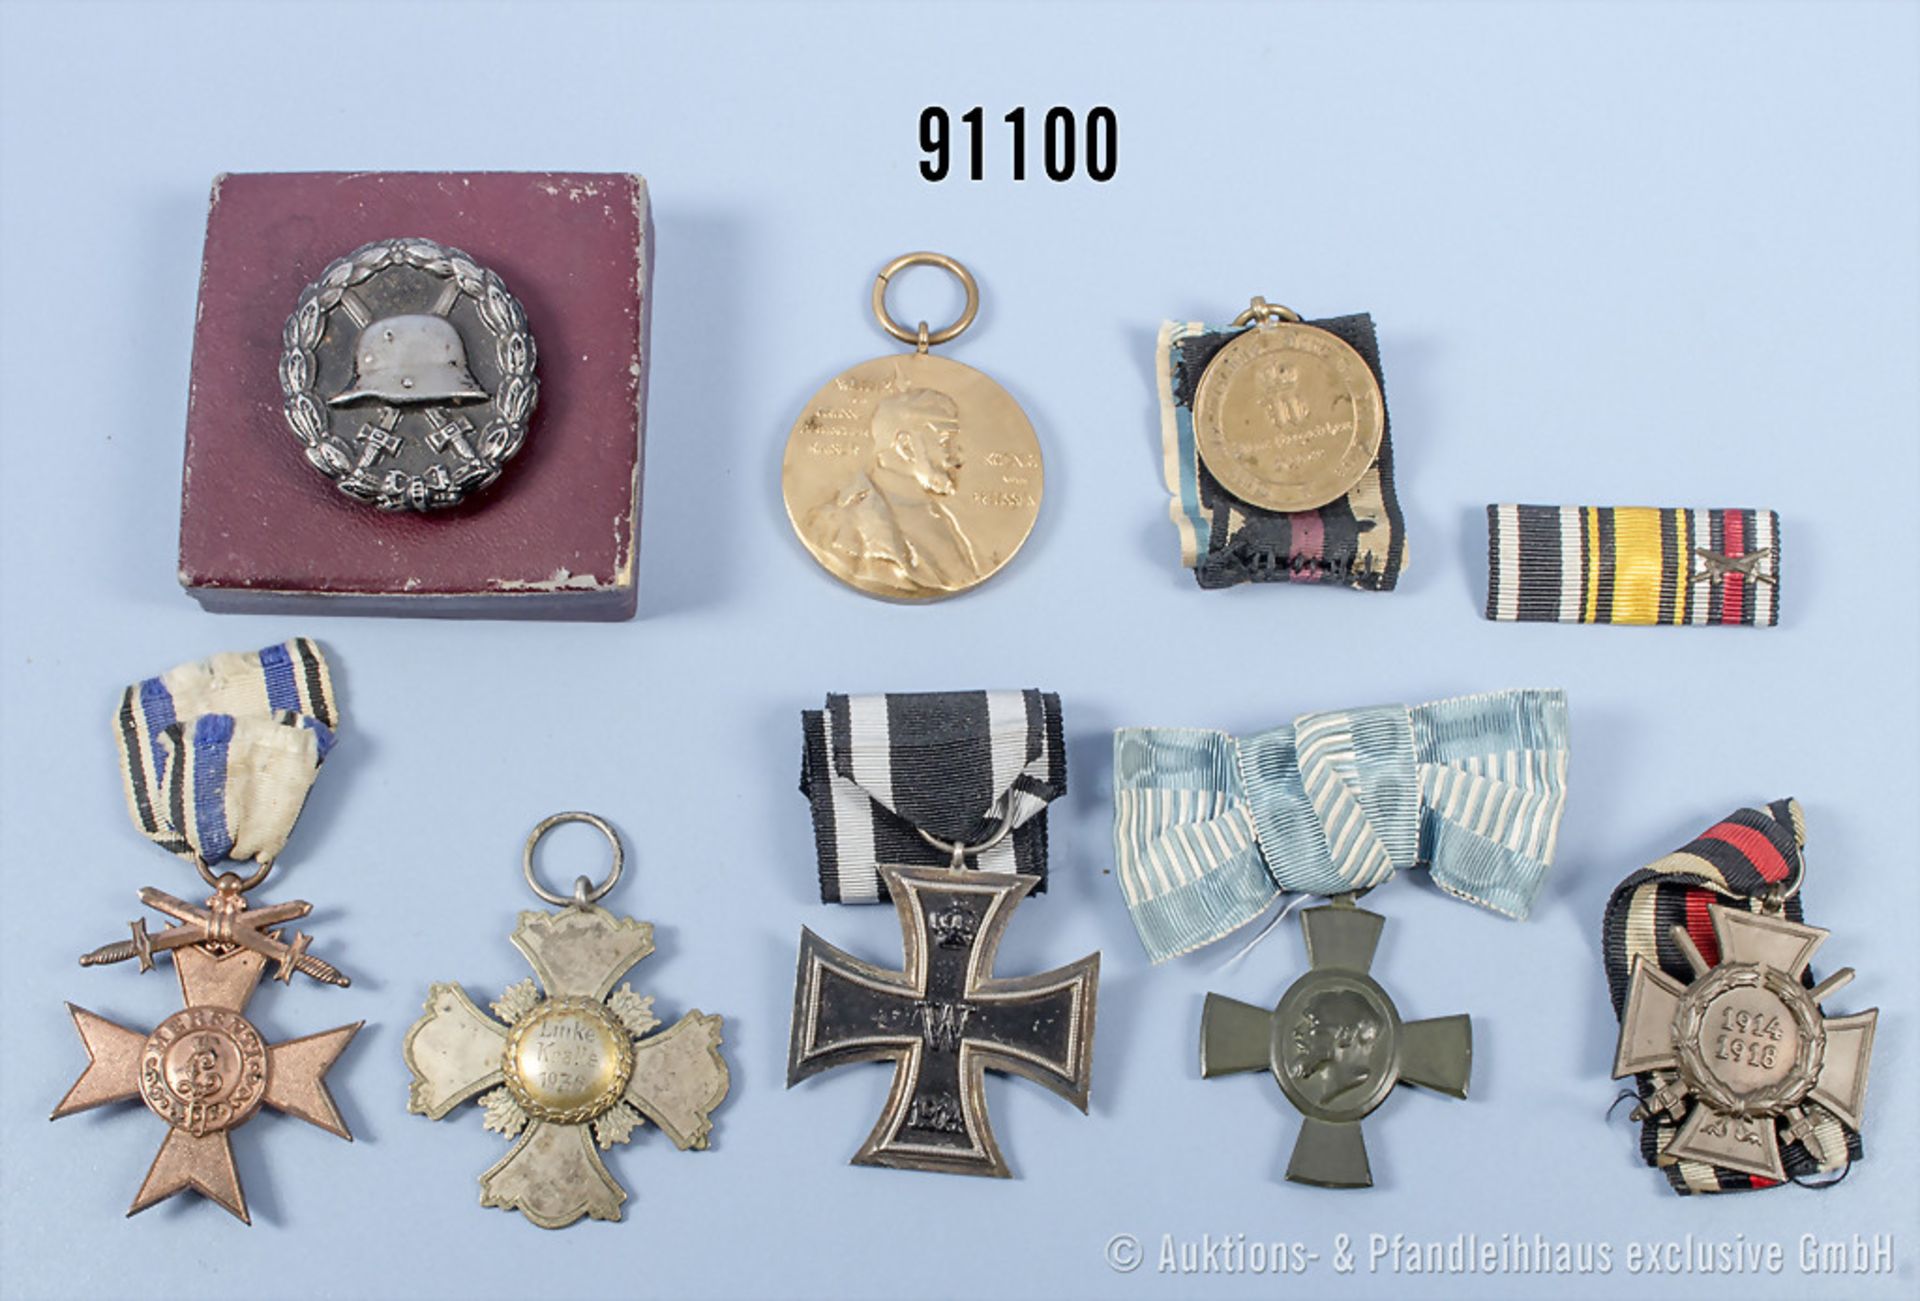 Konv. EK 2 1914, Centenarmedaille, EKF, KDM 1870/71, VWA in Schwarz, Schützenabzeichen ...